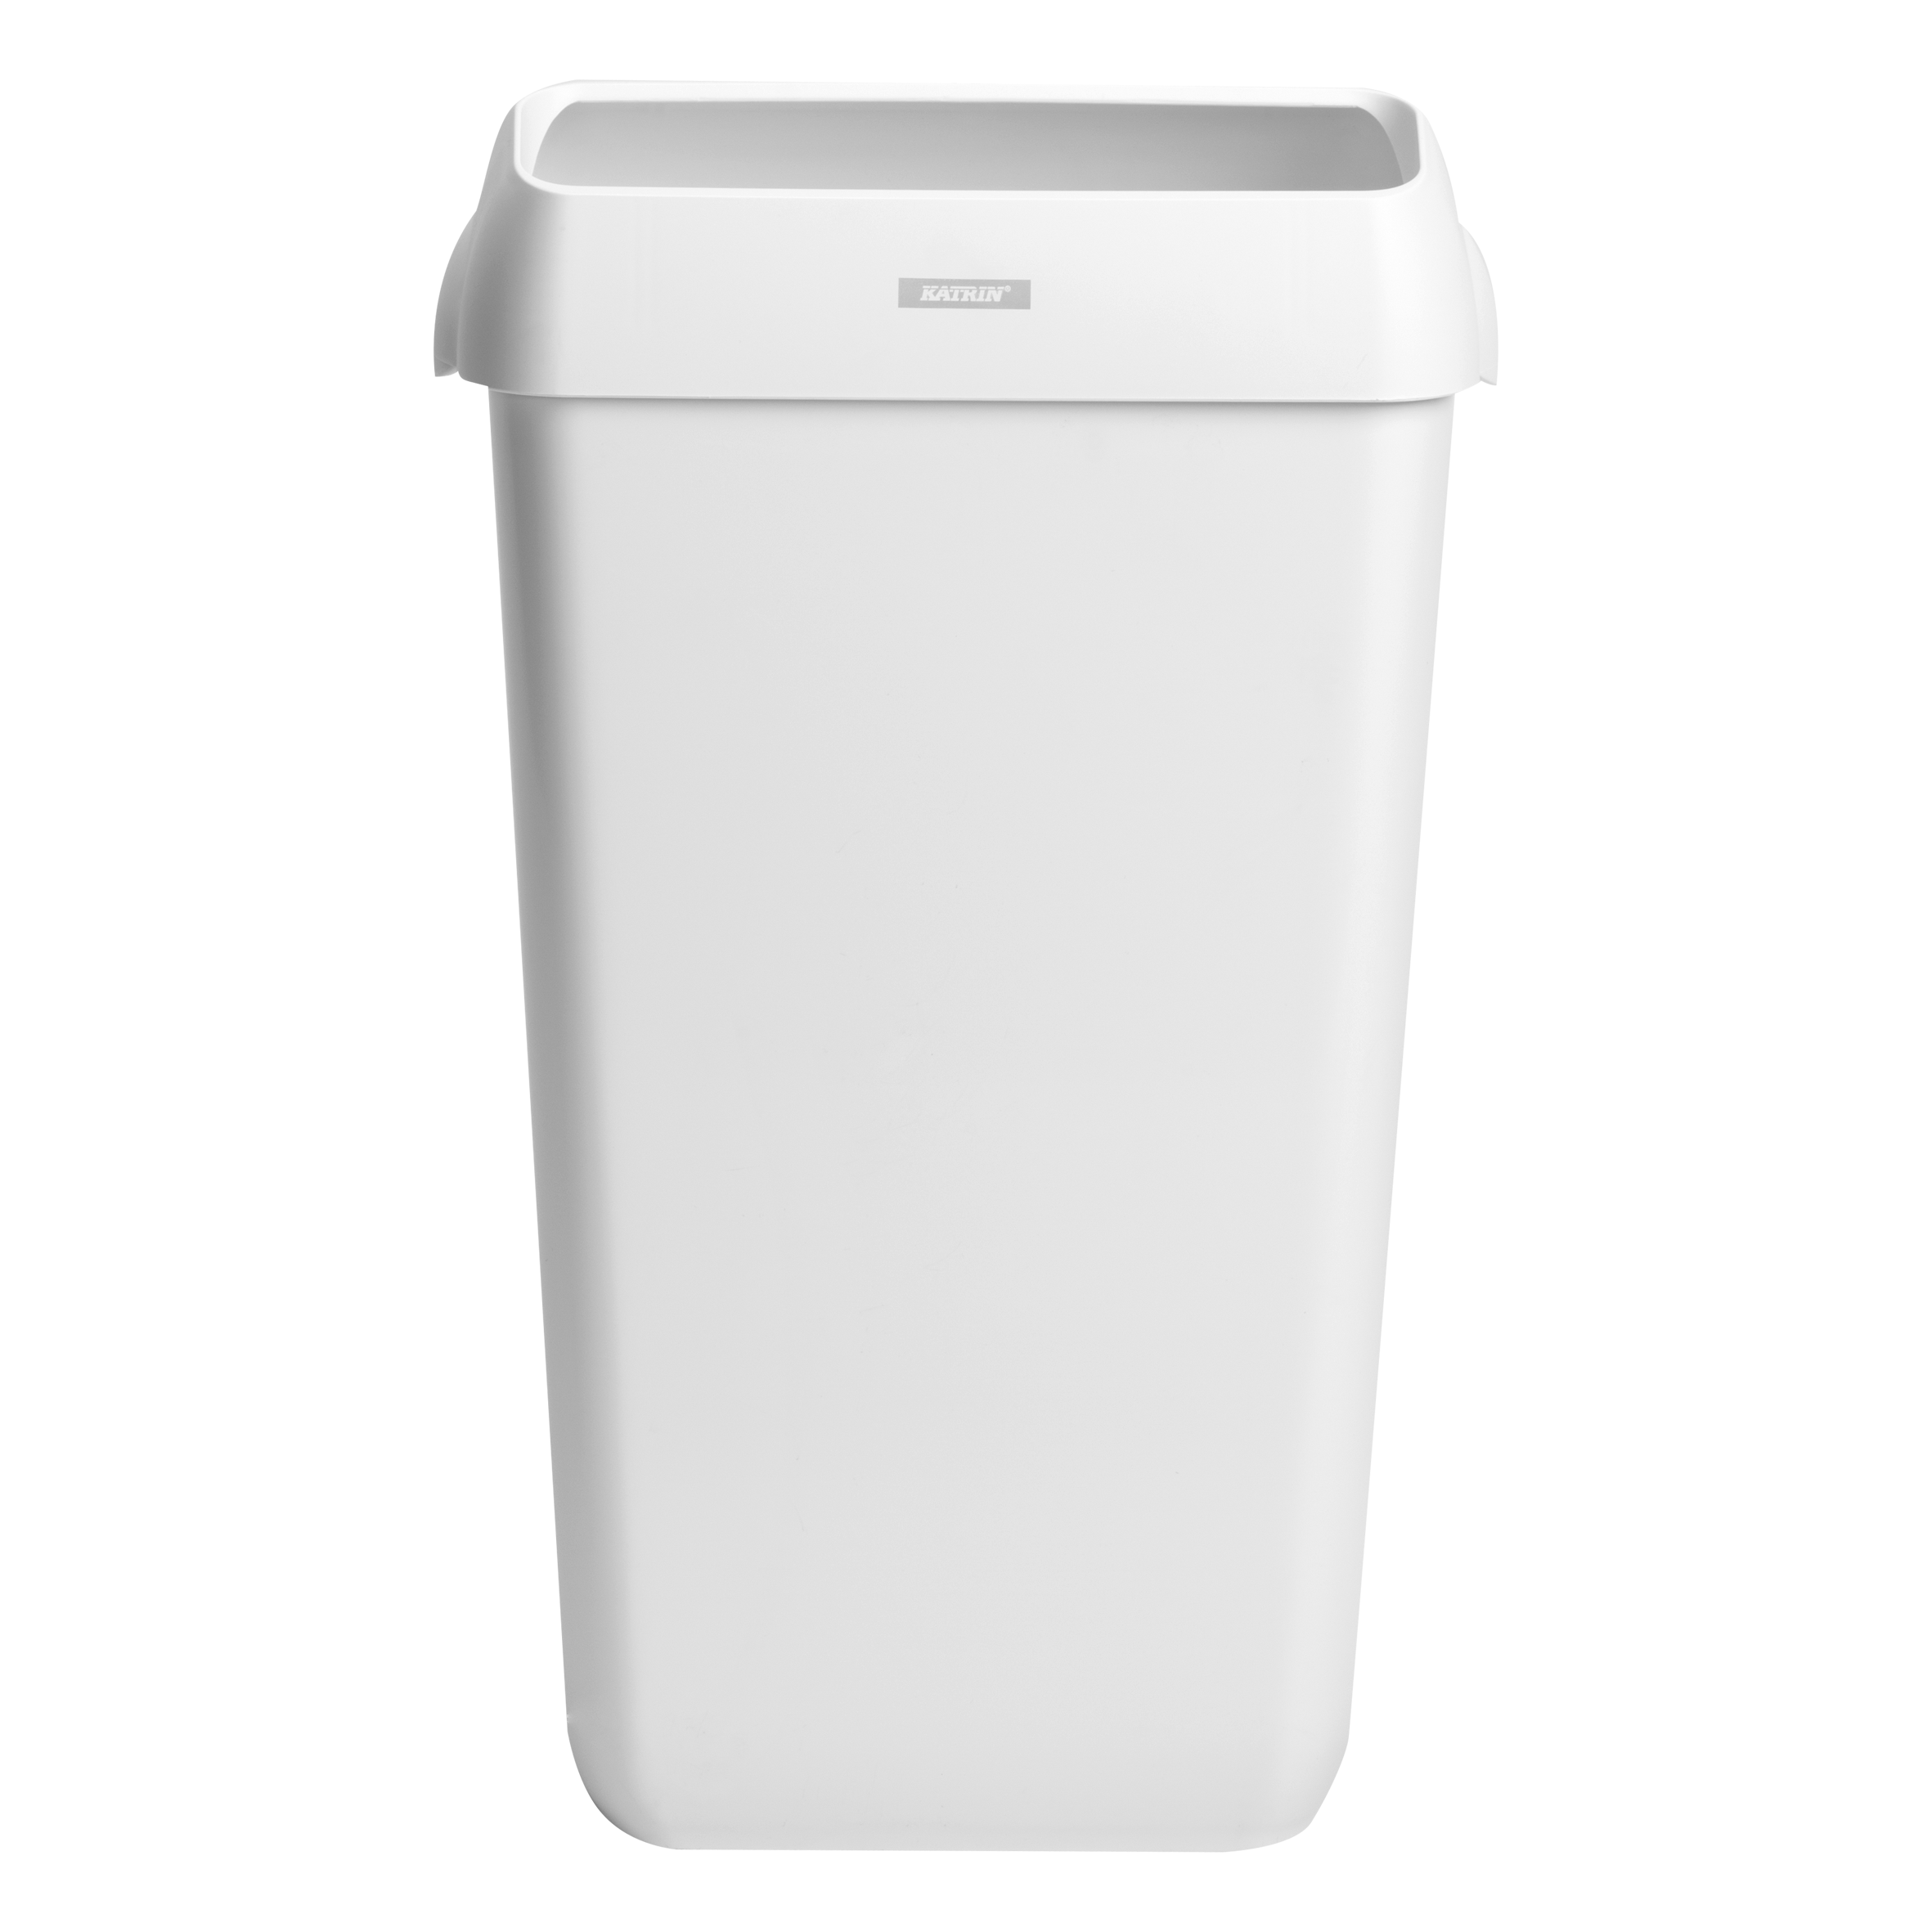 Katrin Mülleimer/Abfallbehälter 25 Liter - Weiß (91899)